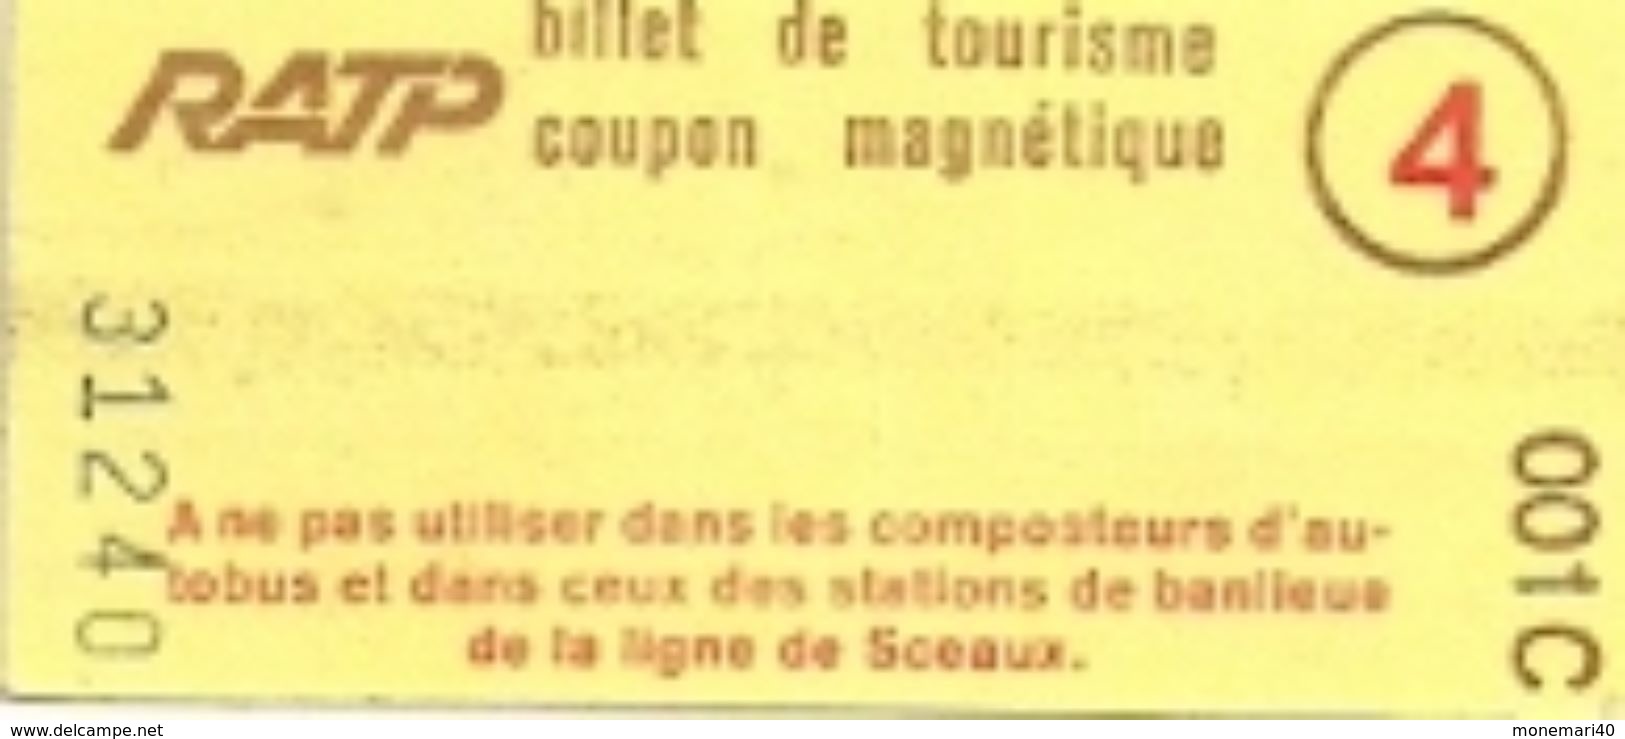 RATP - BILLET DE TOURISME - COUPON MAGNÉTIQUE (PARIS) - Europe